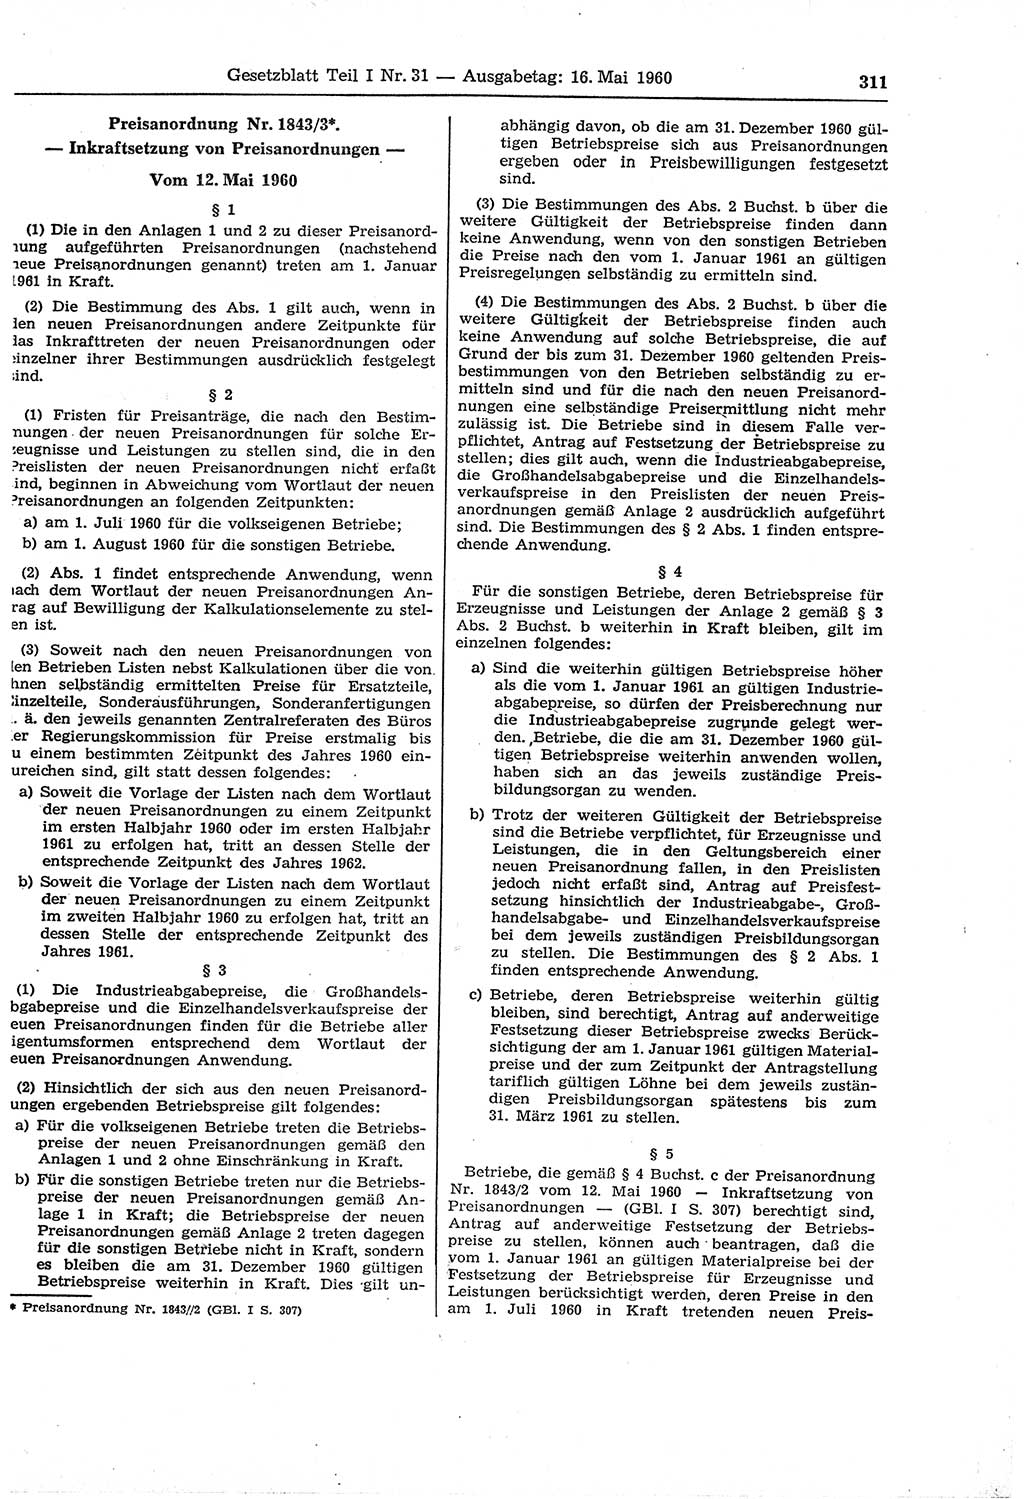 Gesetzblatt (GBl.) der Deutschen Demokratischen Republik (DDR) Teil Ⅰ 1960, Seite 311 (GBl. DDR Ⅰ 1960, S. 311)